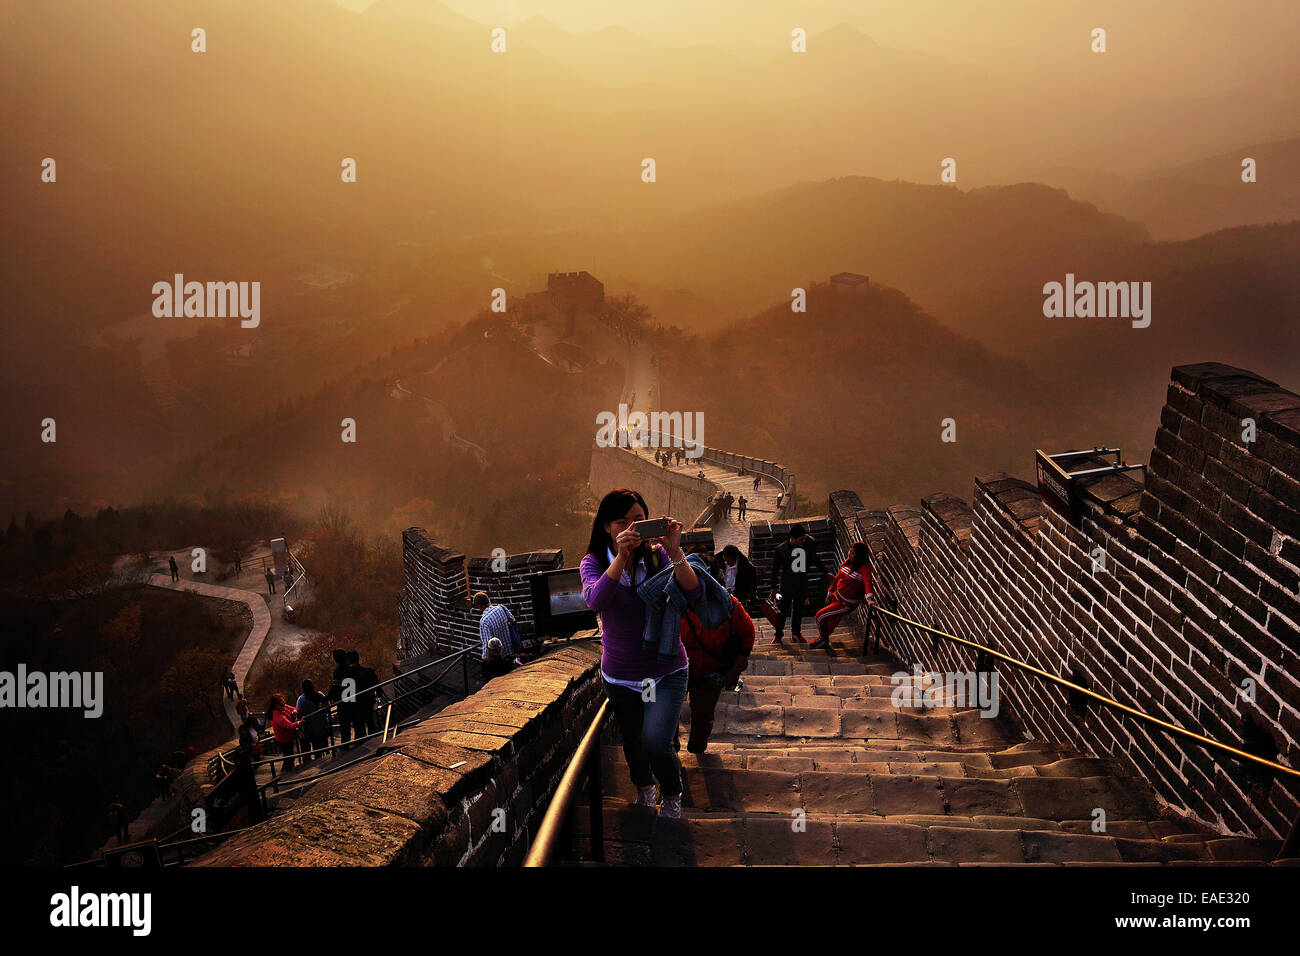 La Grande Muraglia della Cina sorge al tramonto sopra il paesaggio circostante coperto dallo smog presso Badaling, circa 70 chilometri a nord-ovest di Pechino nella contea di Yanqing, Cina. La Grande Muraglia si estende attraverso la storica i confini del nord della Cina e con esso è Foto Stock